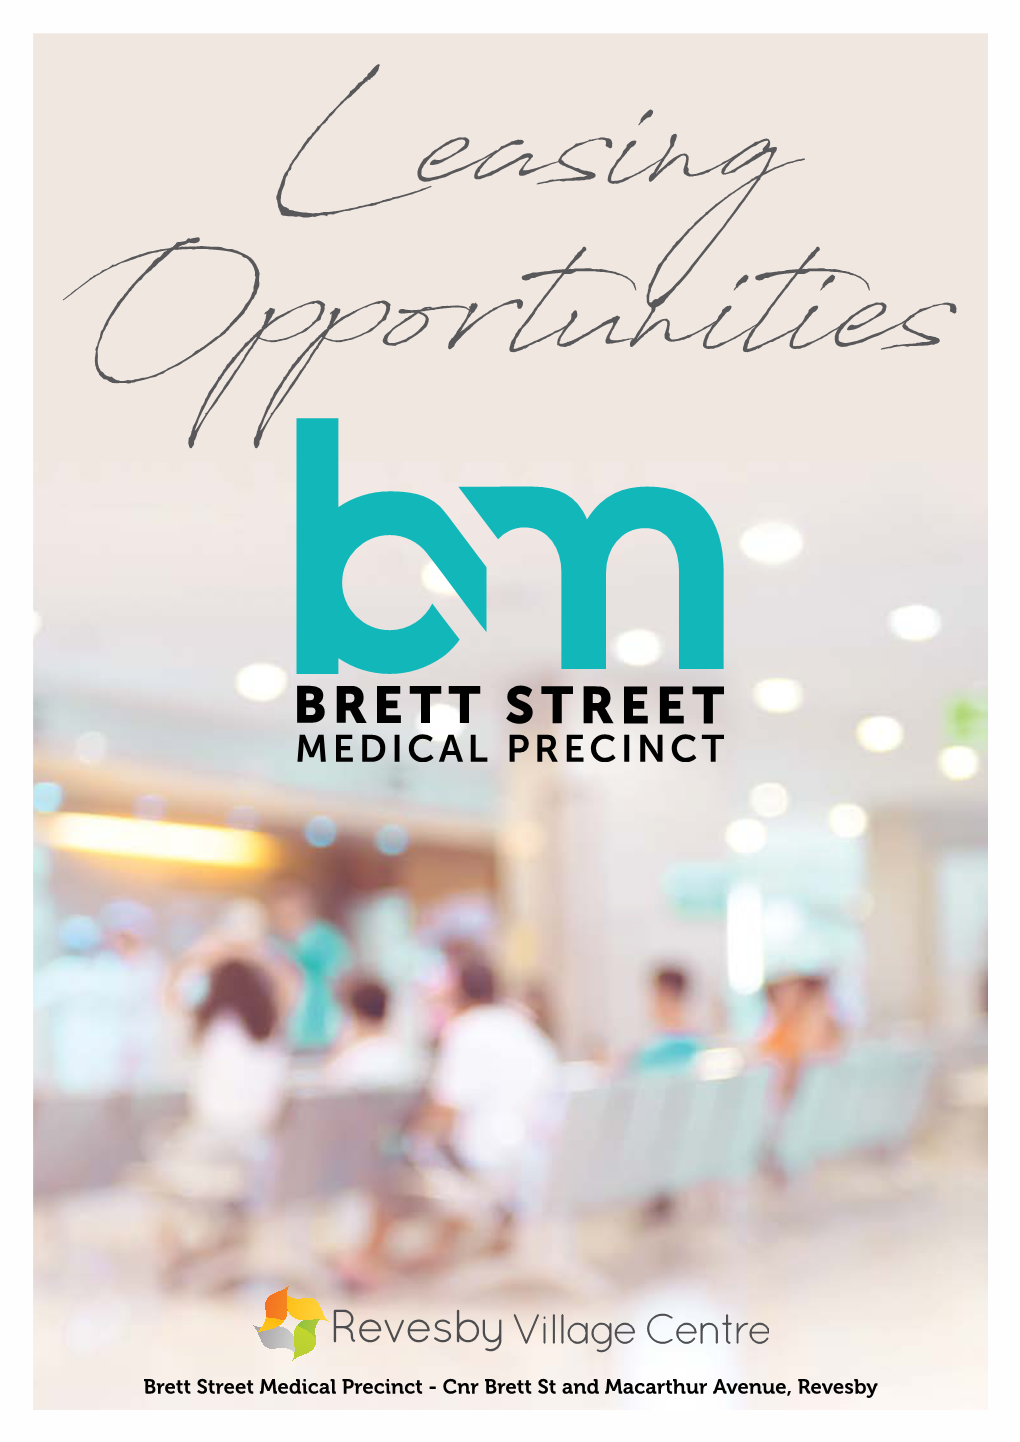 Brett Street Medical Precinct